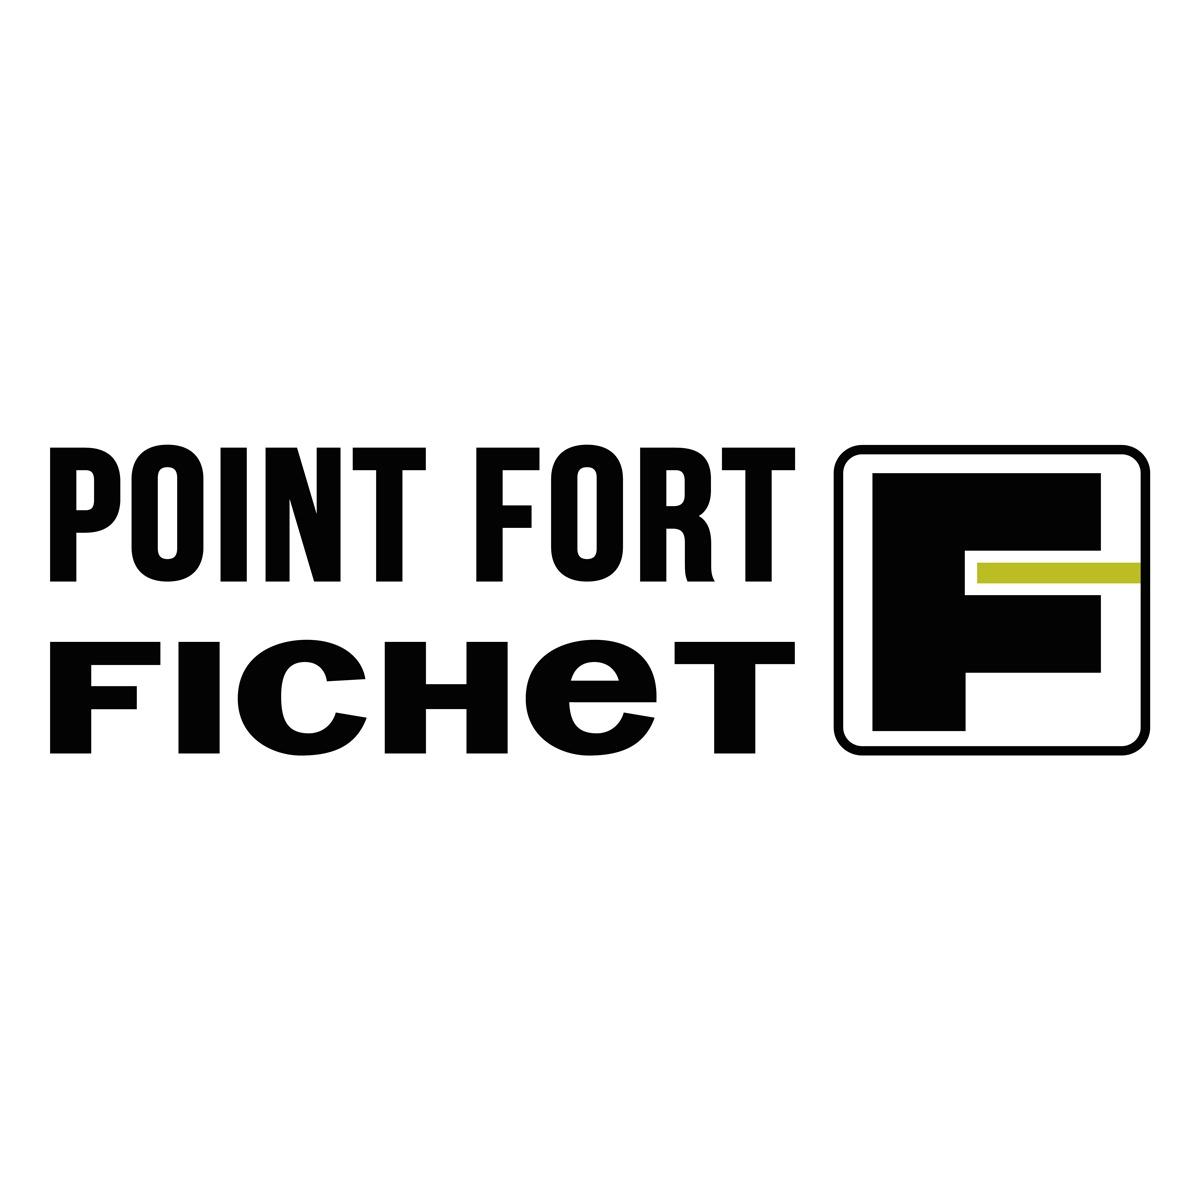 Audit Securite Bx Aquitaine - Point Fort Fichet  Bordeaux